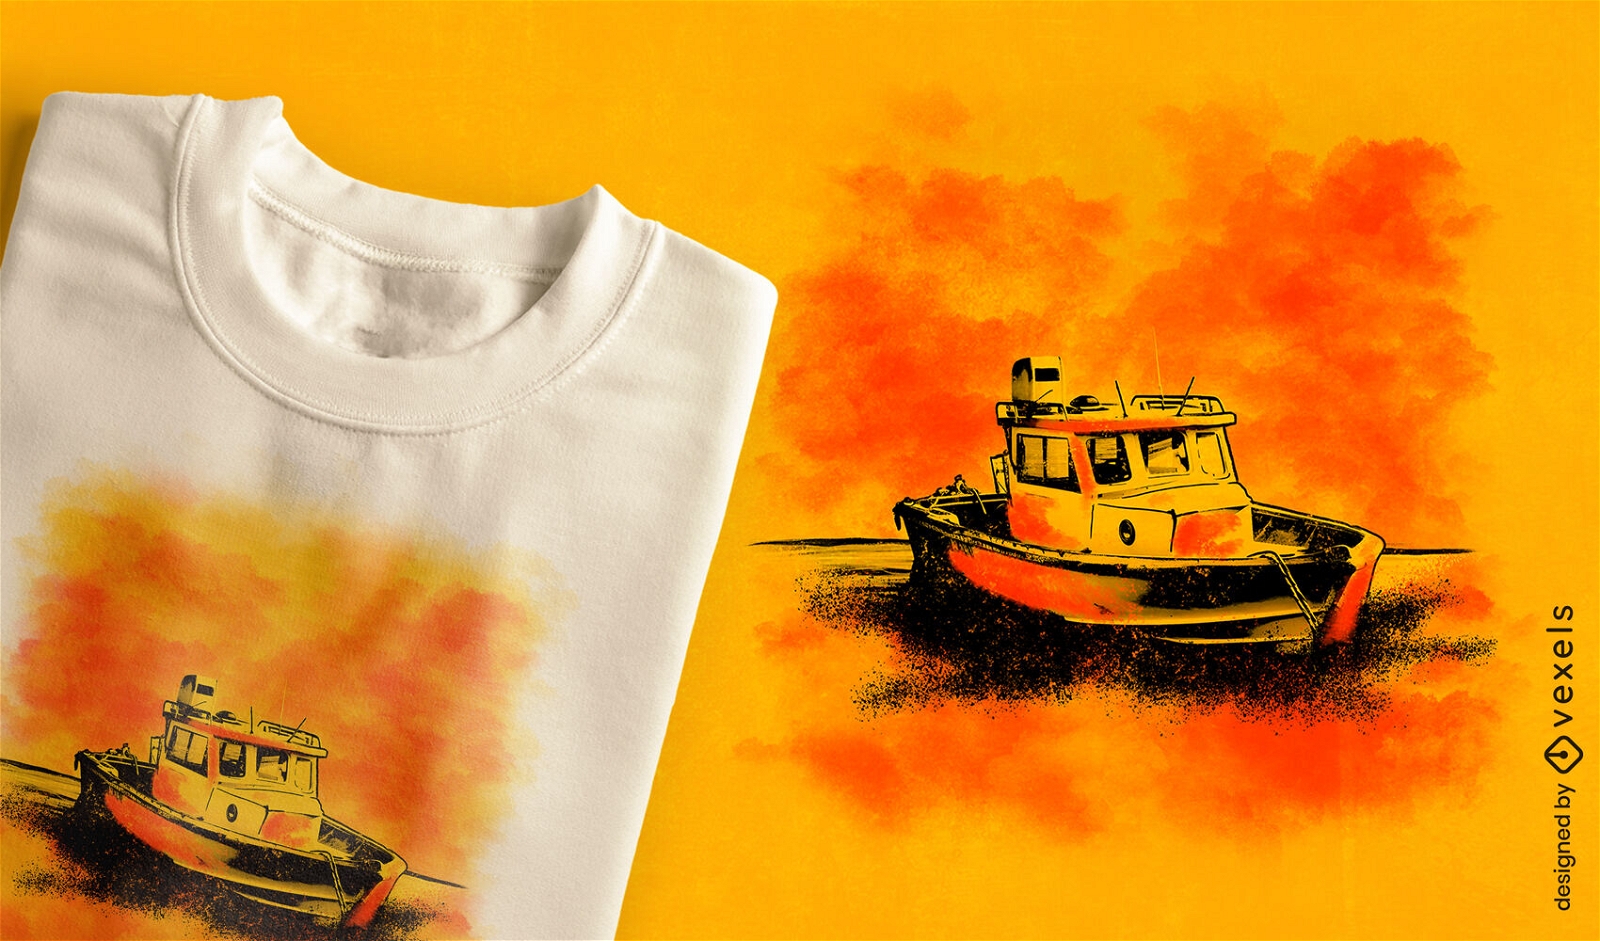 Tugboat t-shirt design